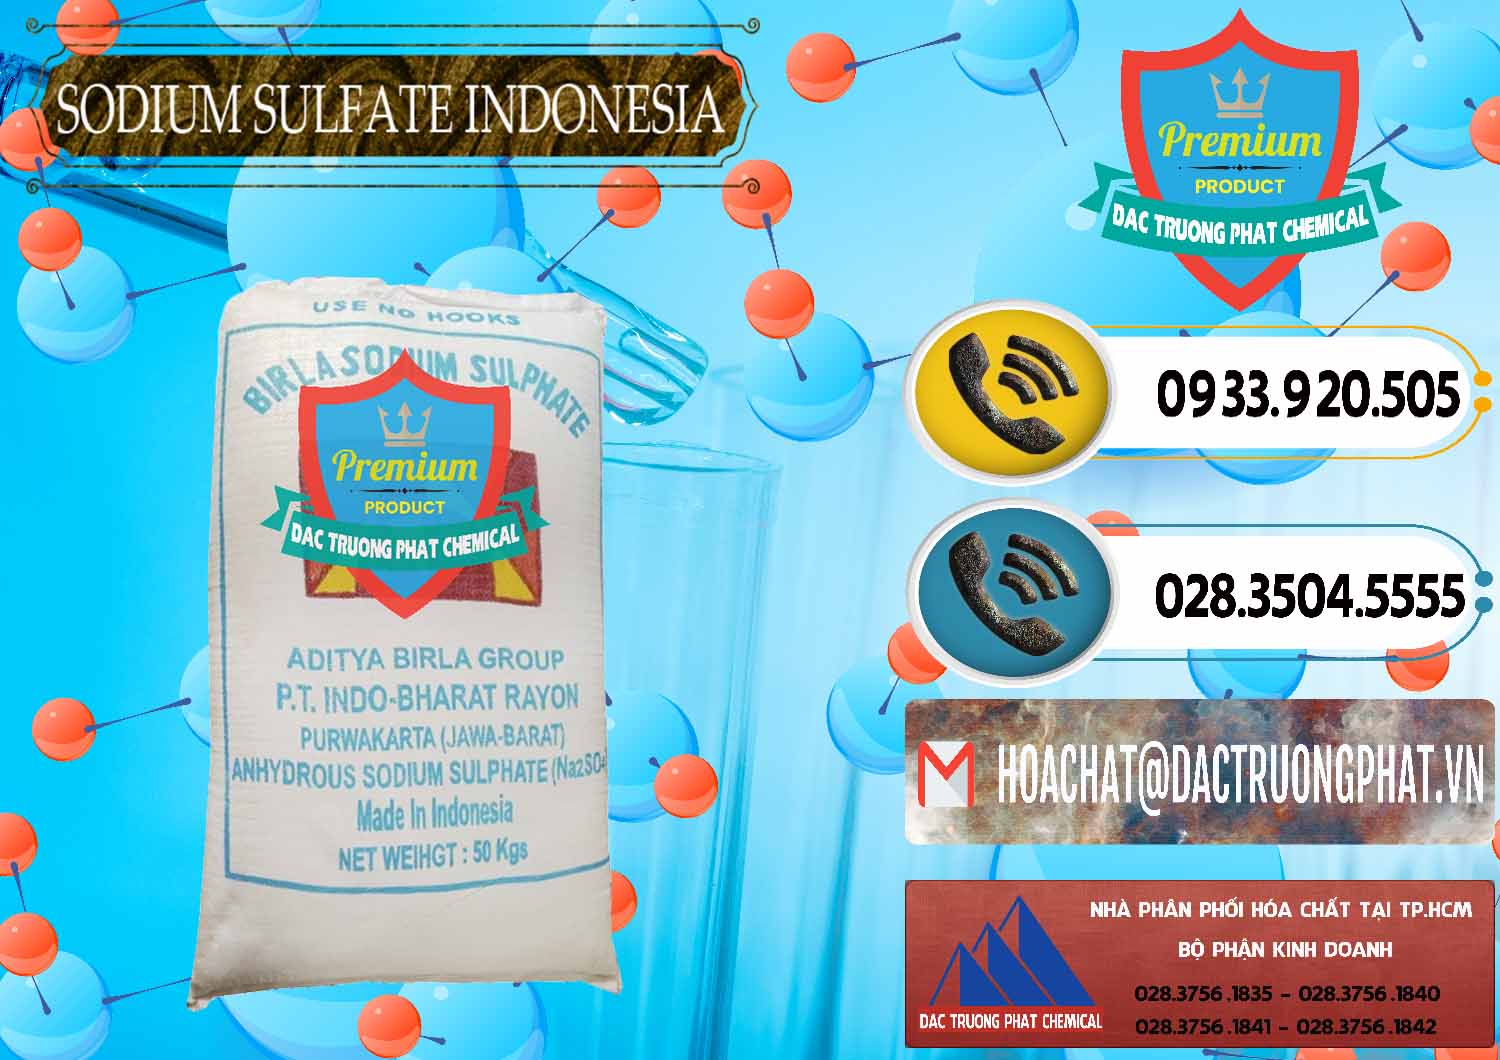 Chuyên bán ( phân phối ) Sodium Sulphate - Muối Sunfat Na2SO4 99% Indonesia - 0459 - Nơi bán và cung cấp hóa chất tại TP.HCM - hoachatdetnhuom.vn